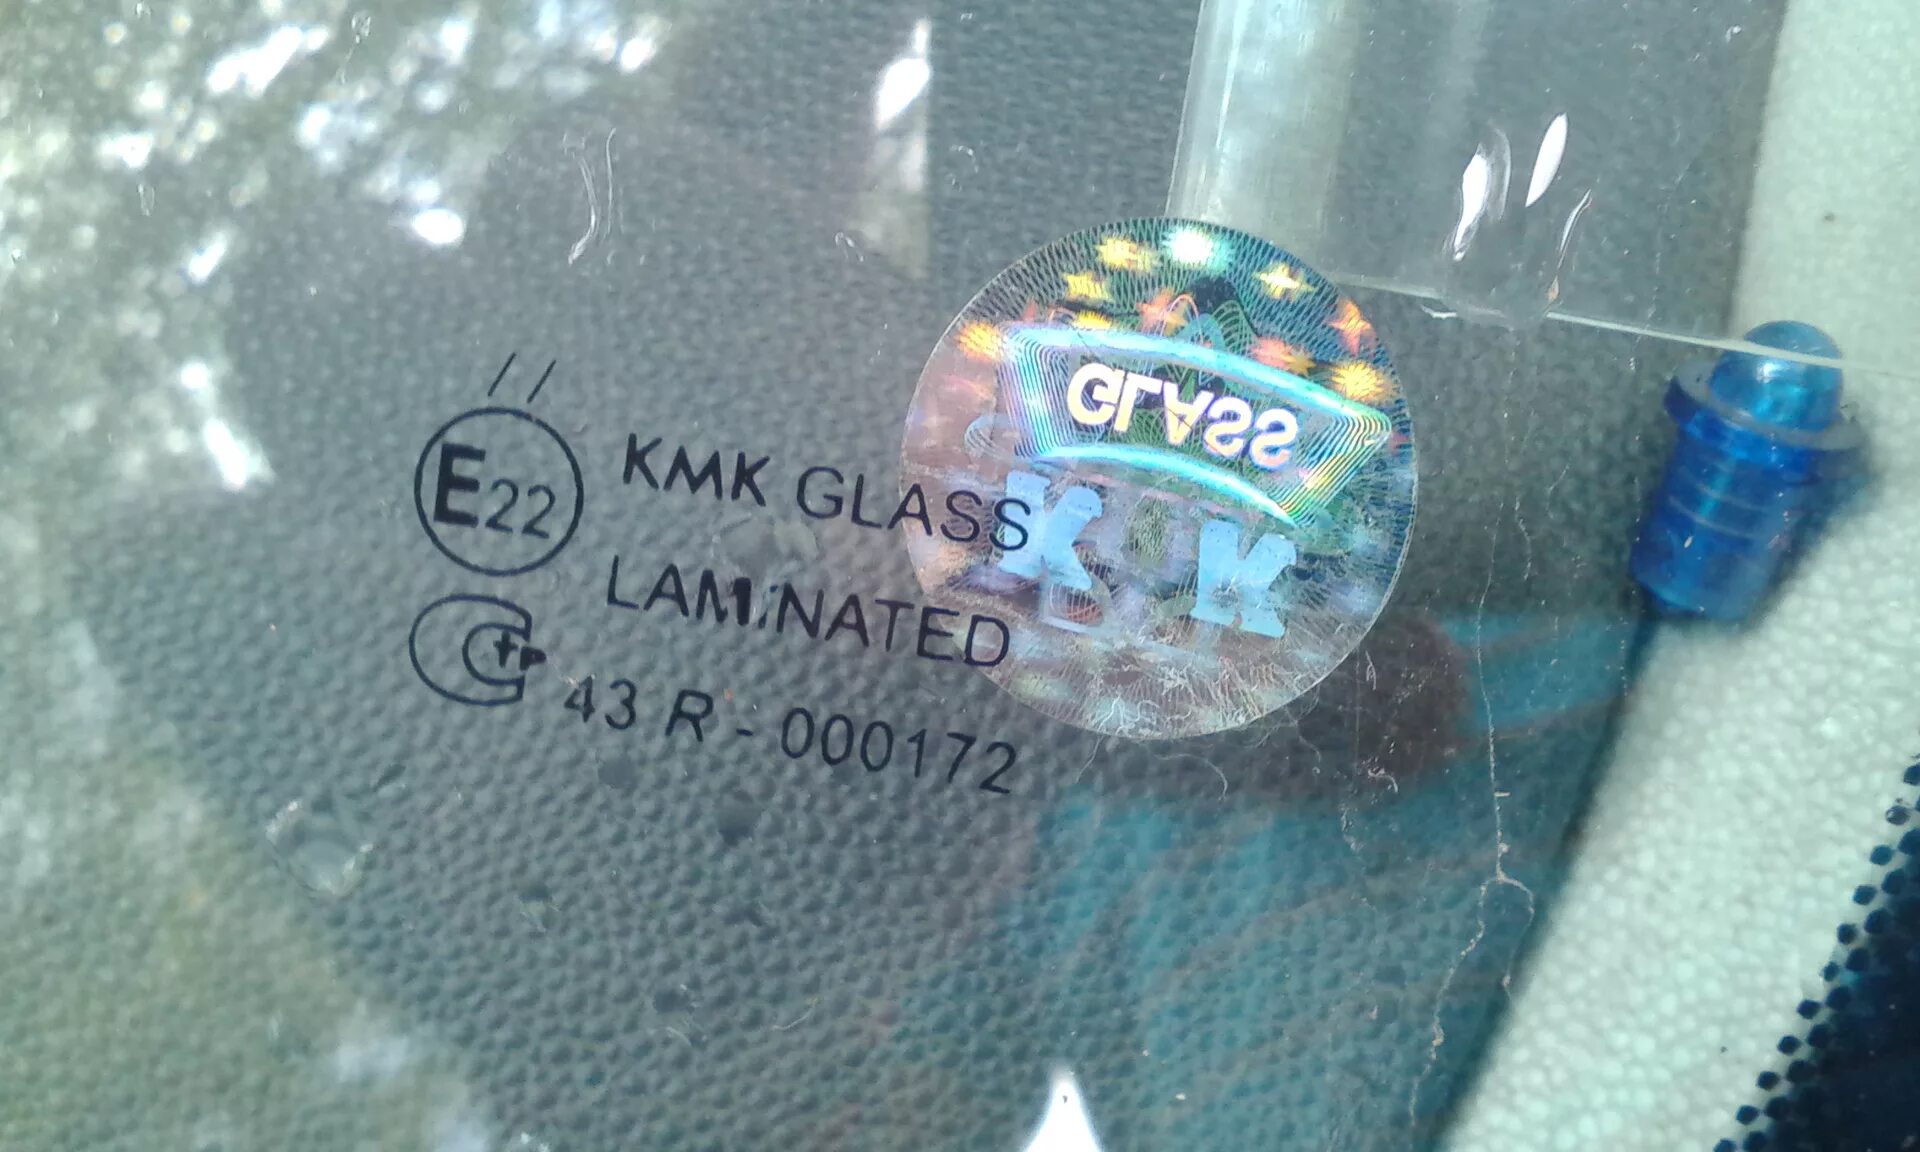 Стекла кмк отзывы. Стекло лобовое КМК Glass 43r. KMK Glass лобовое стекло 43r-000045. Стекло 5672agngn KMK Glass. Стекло лобовое KMK Glass WL 43r-011014.